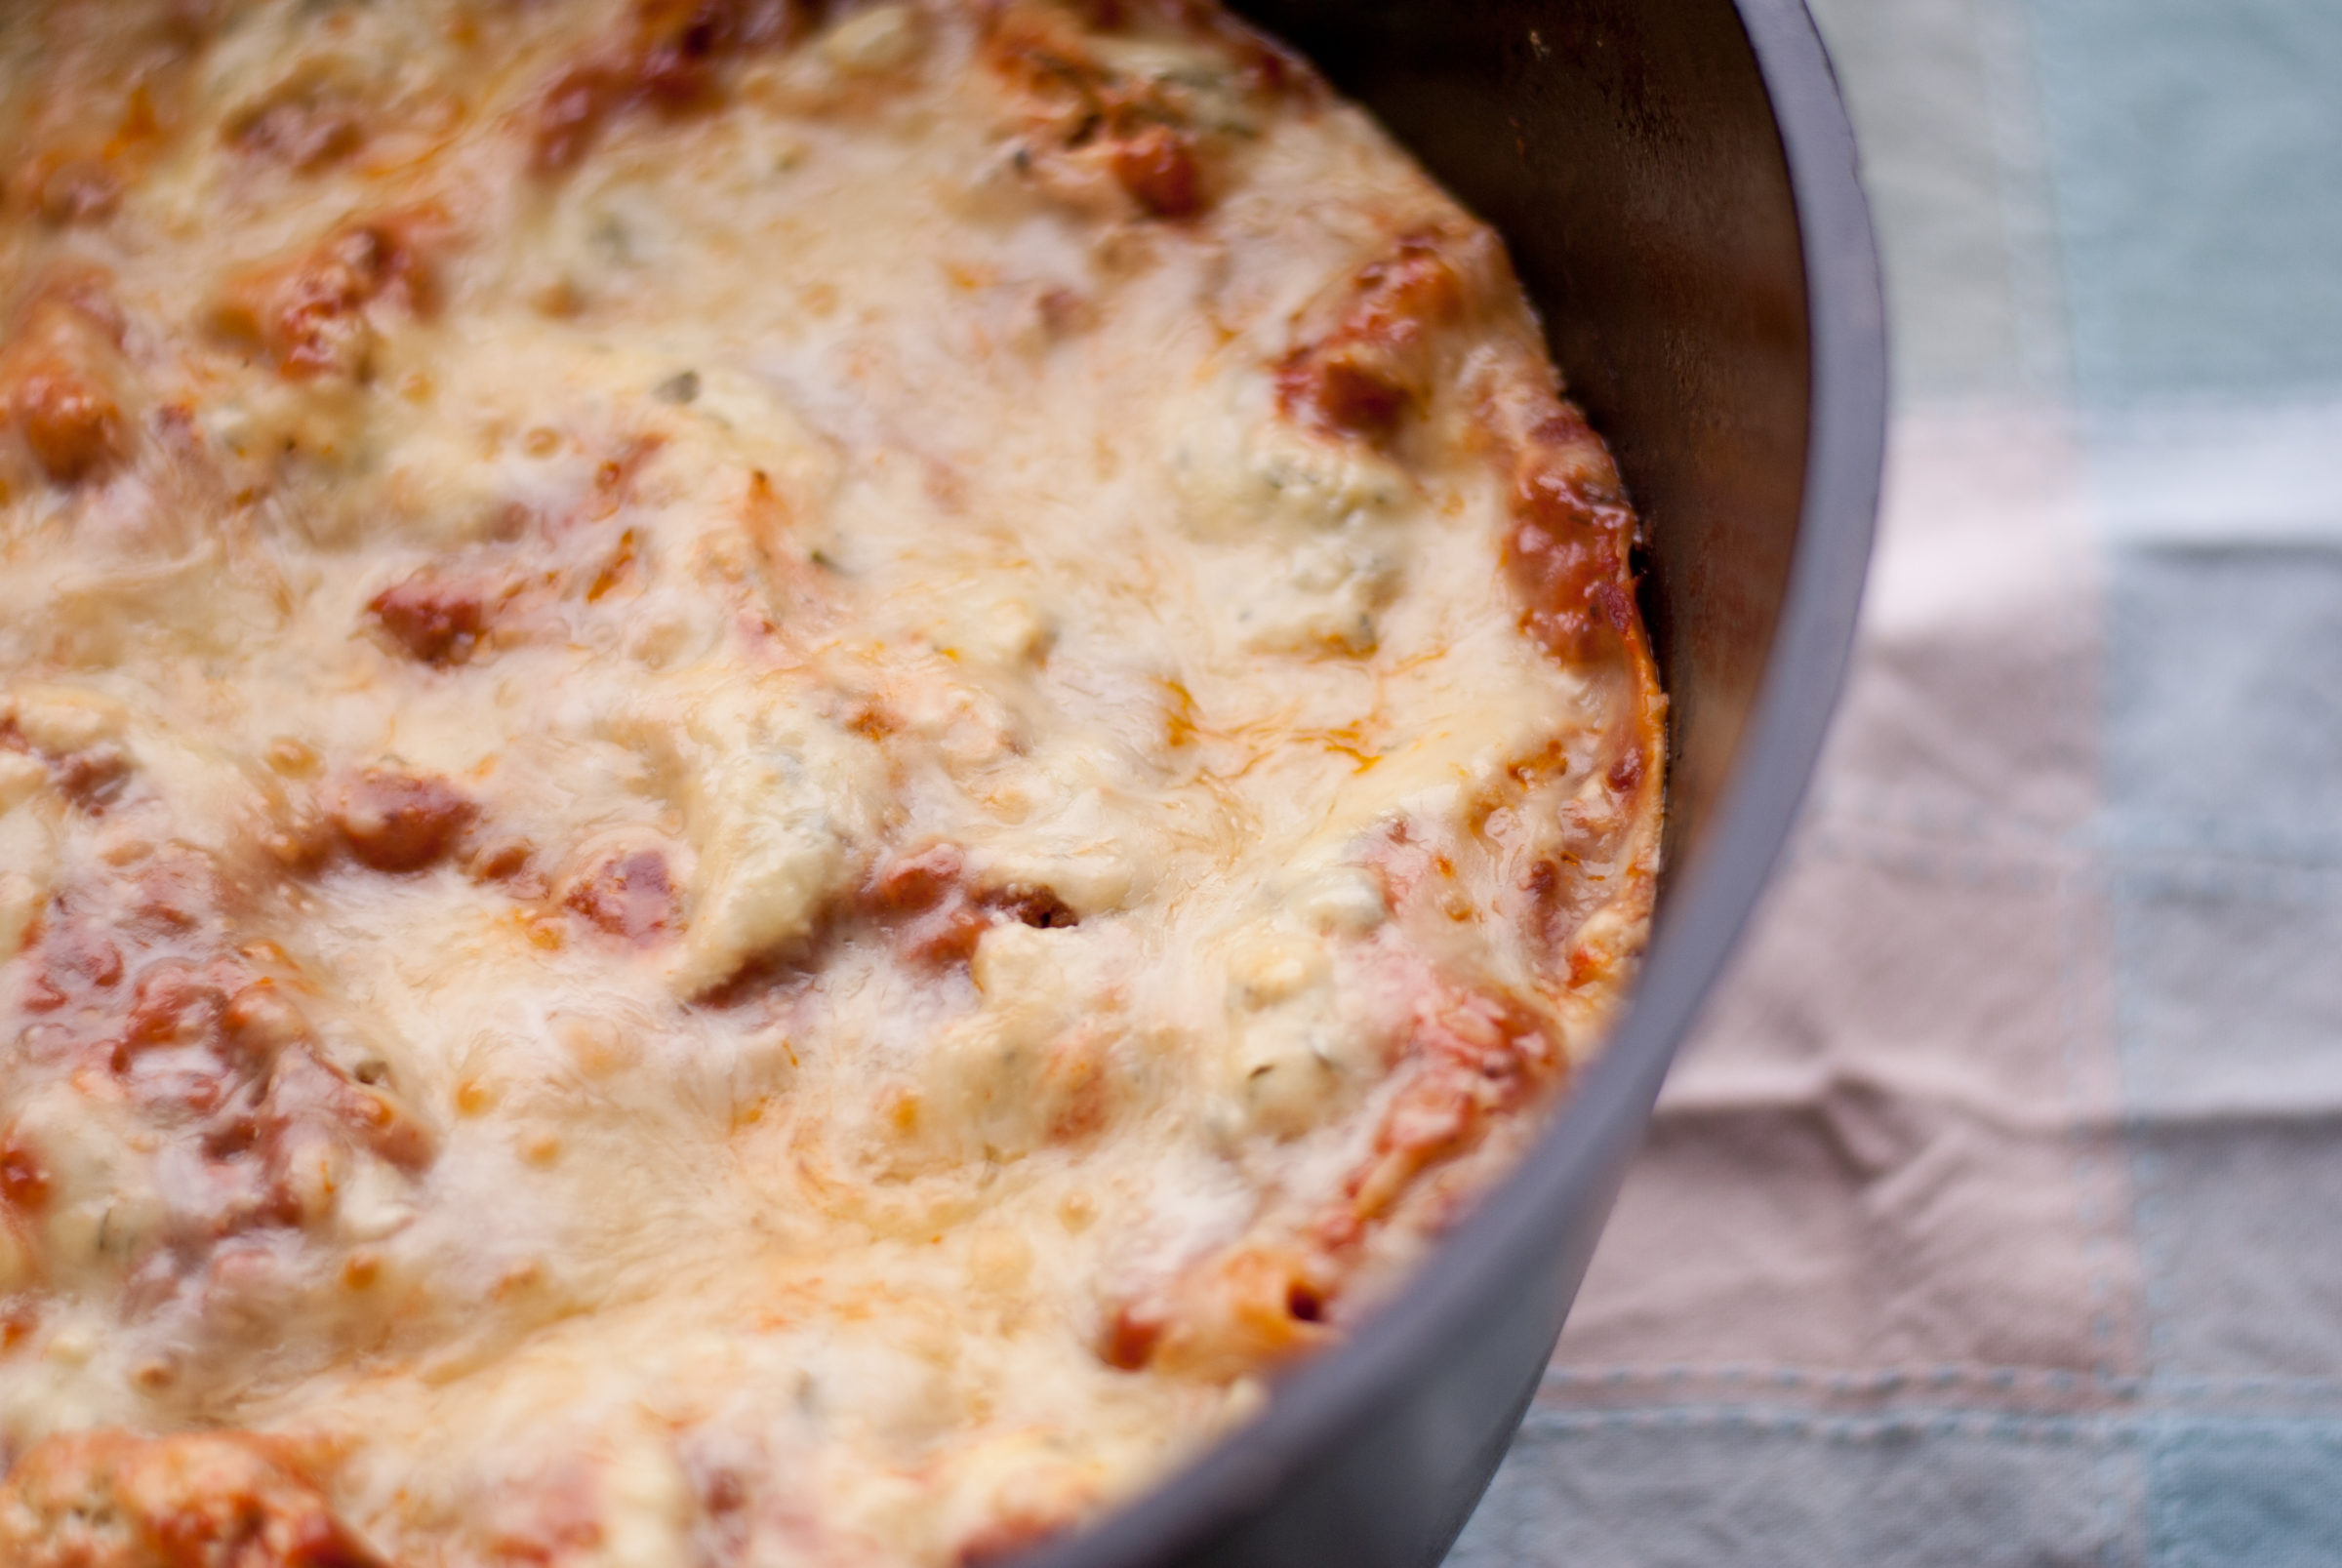 Dutch Oven Lasagna - The Best Quick and Easy Lasagna Recipe